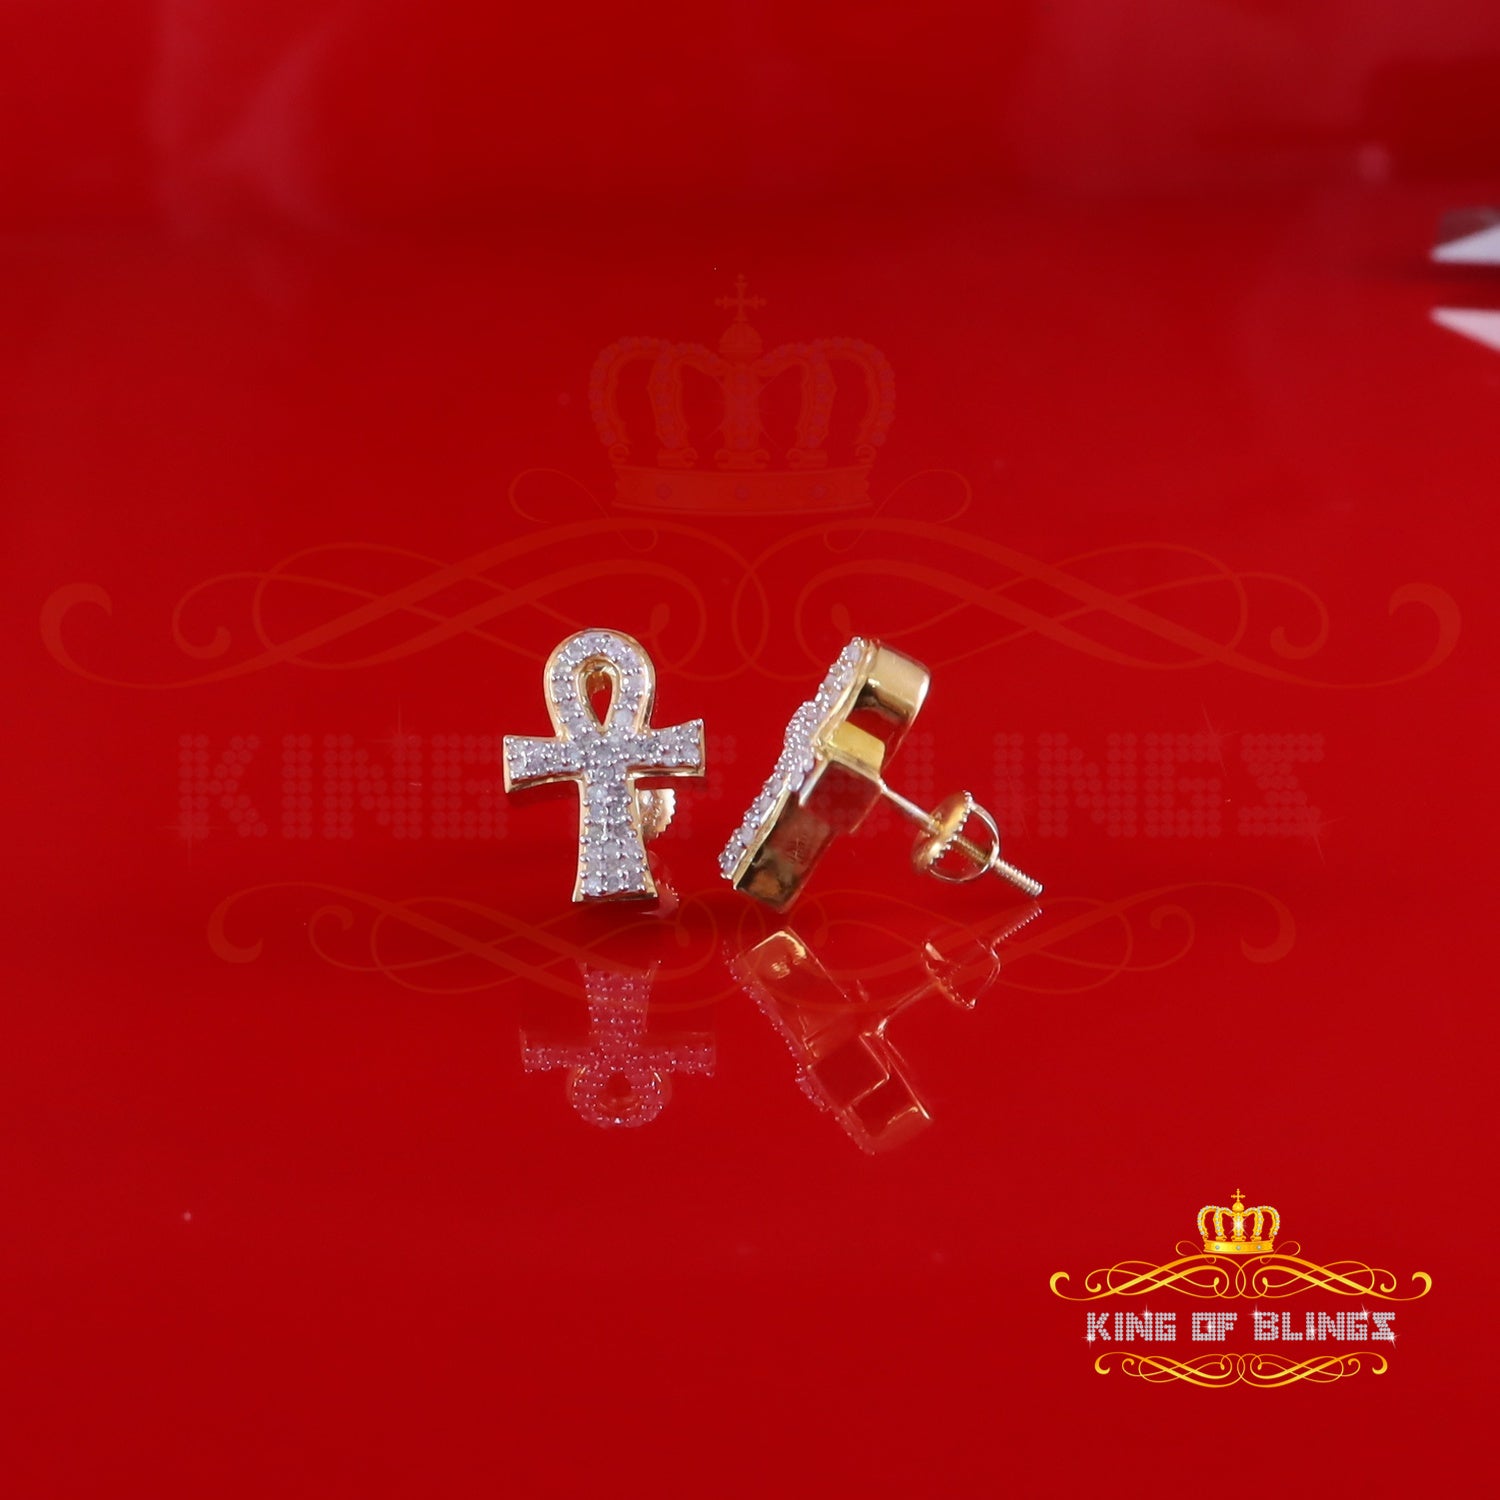 King of Blings-0.40ct Diamond 925 Sterling Silver Yellow for Men's & Women Stud ANKH Earring King of Blings